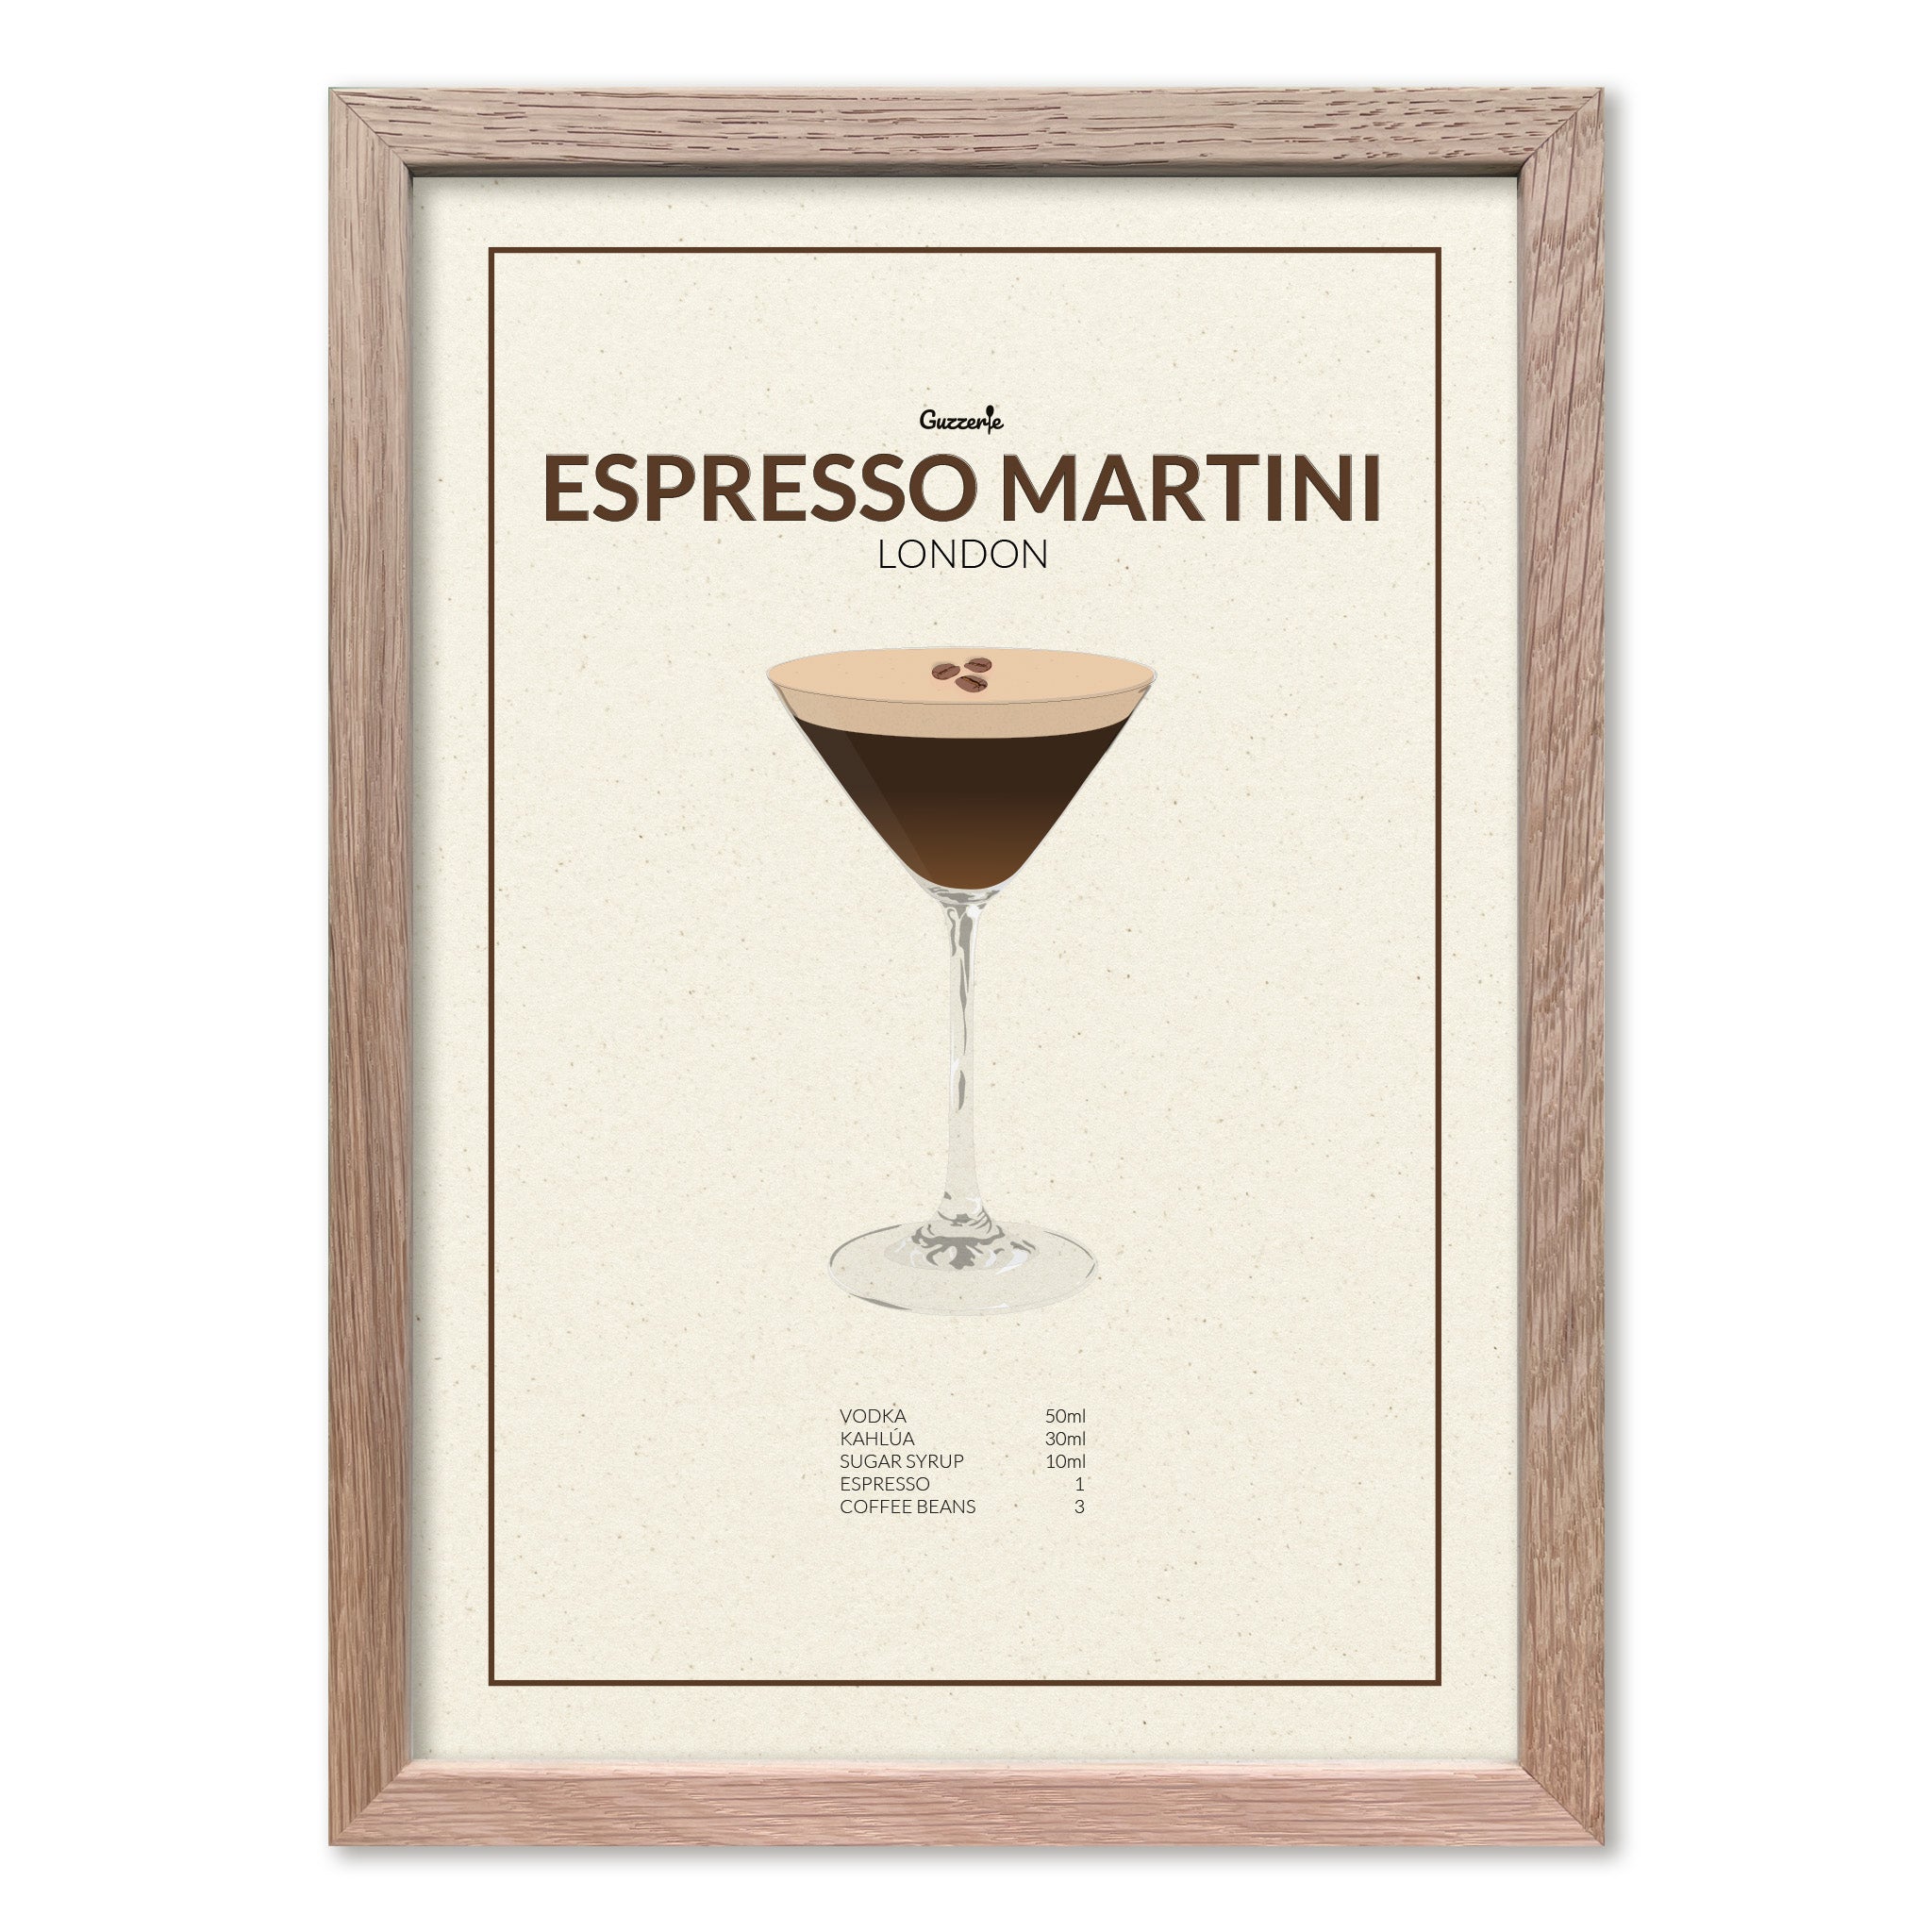 Iconic Poster of Espresso Martini | Guzzerie